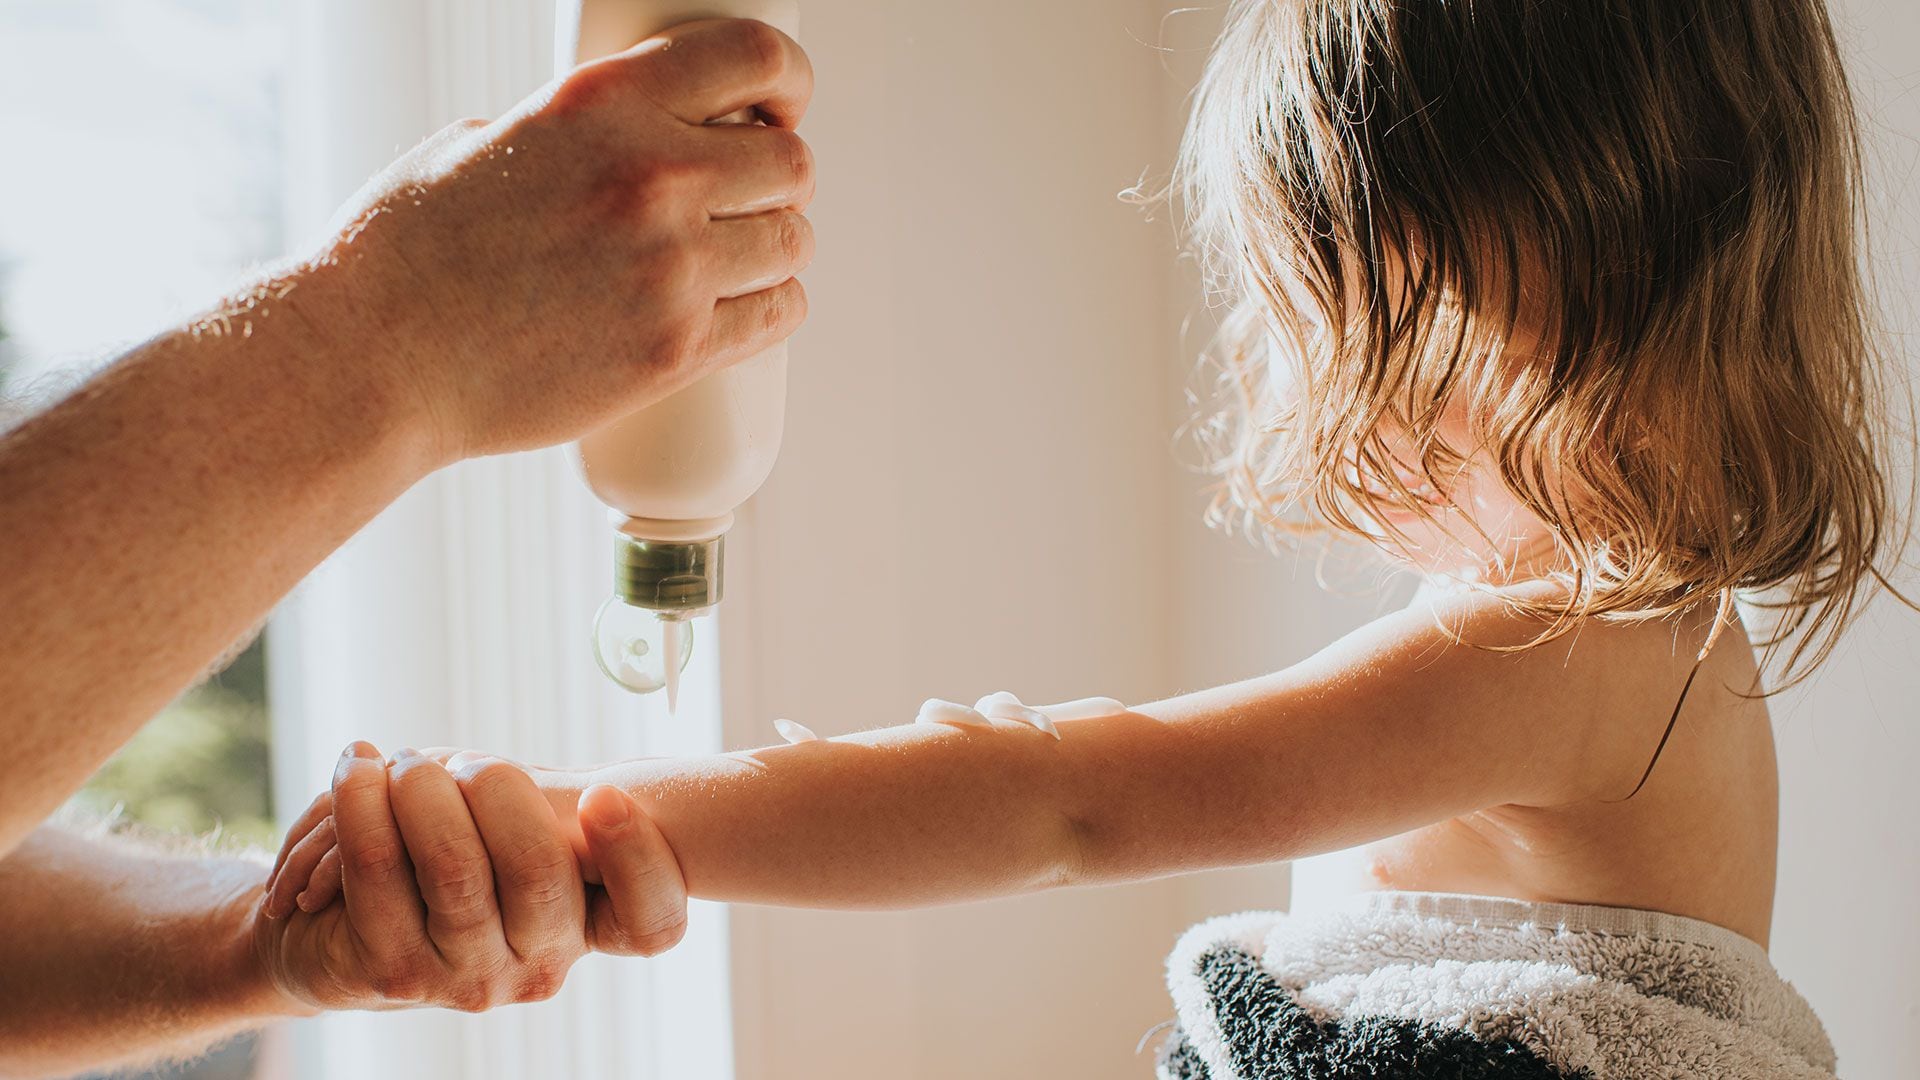 La Sociedad Nacional de Eccema de Estados Unidos (NEA, por sus siglas en inglés) explicó que “la dermatitis atópica es el tipo más común de eccema y afecta a más de 9,6 millones de niños y alrededor de 16,5 millones de adultos en los Estados Unidos" (Gettyimages)